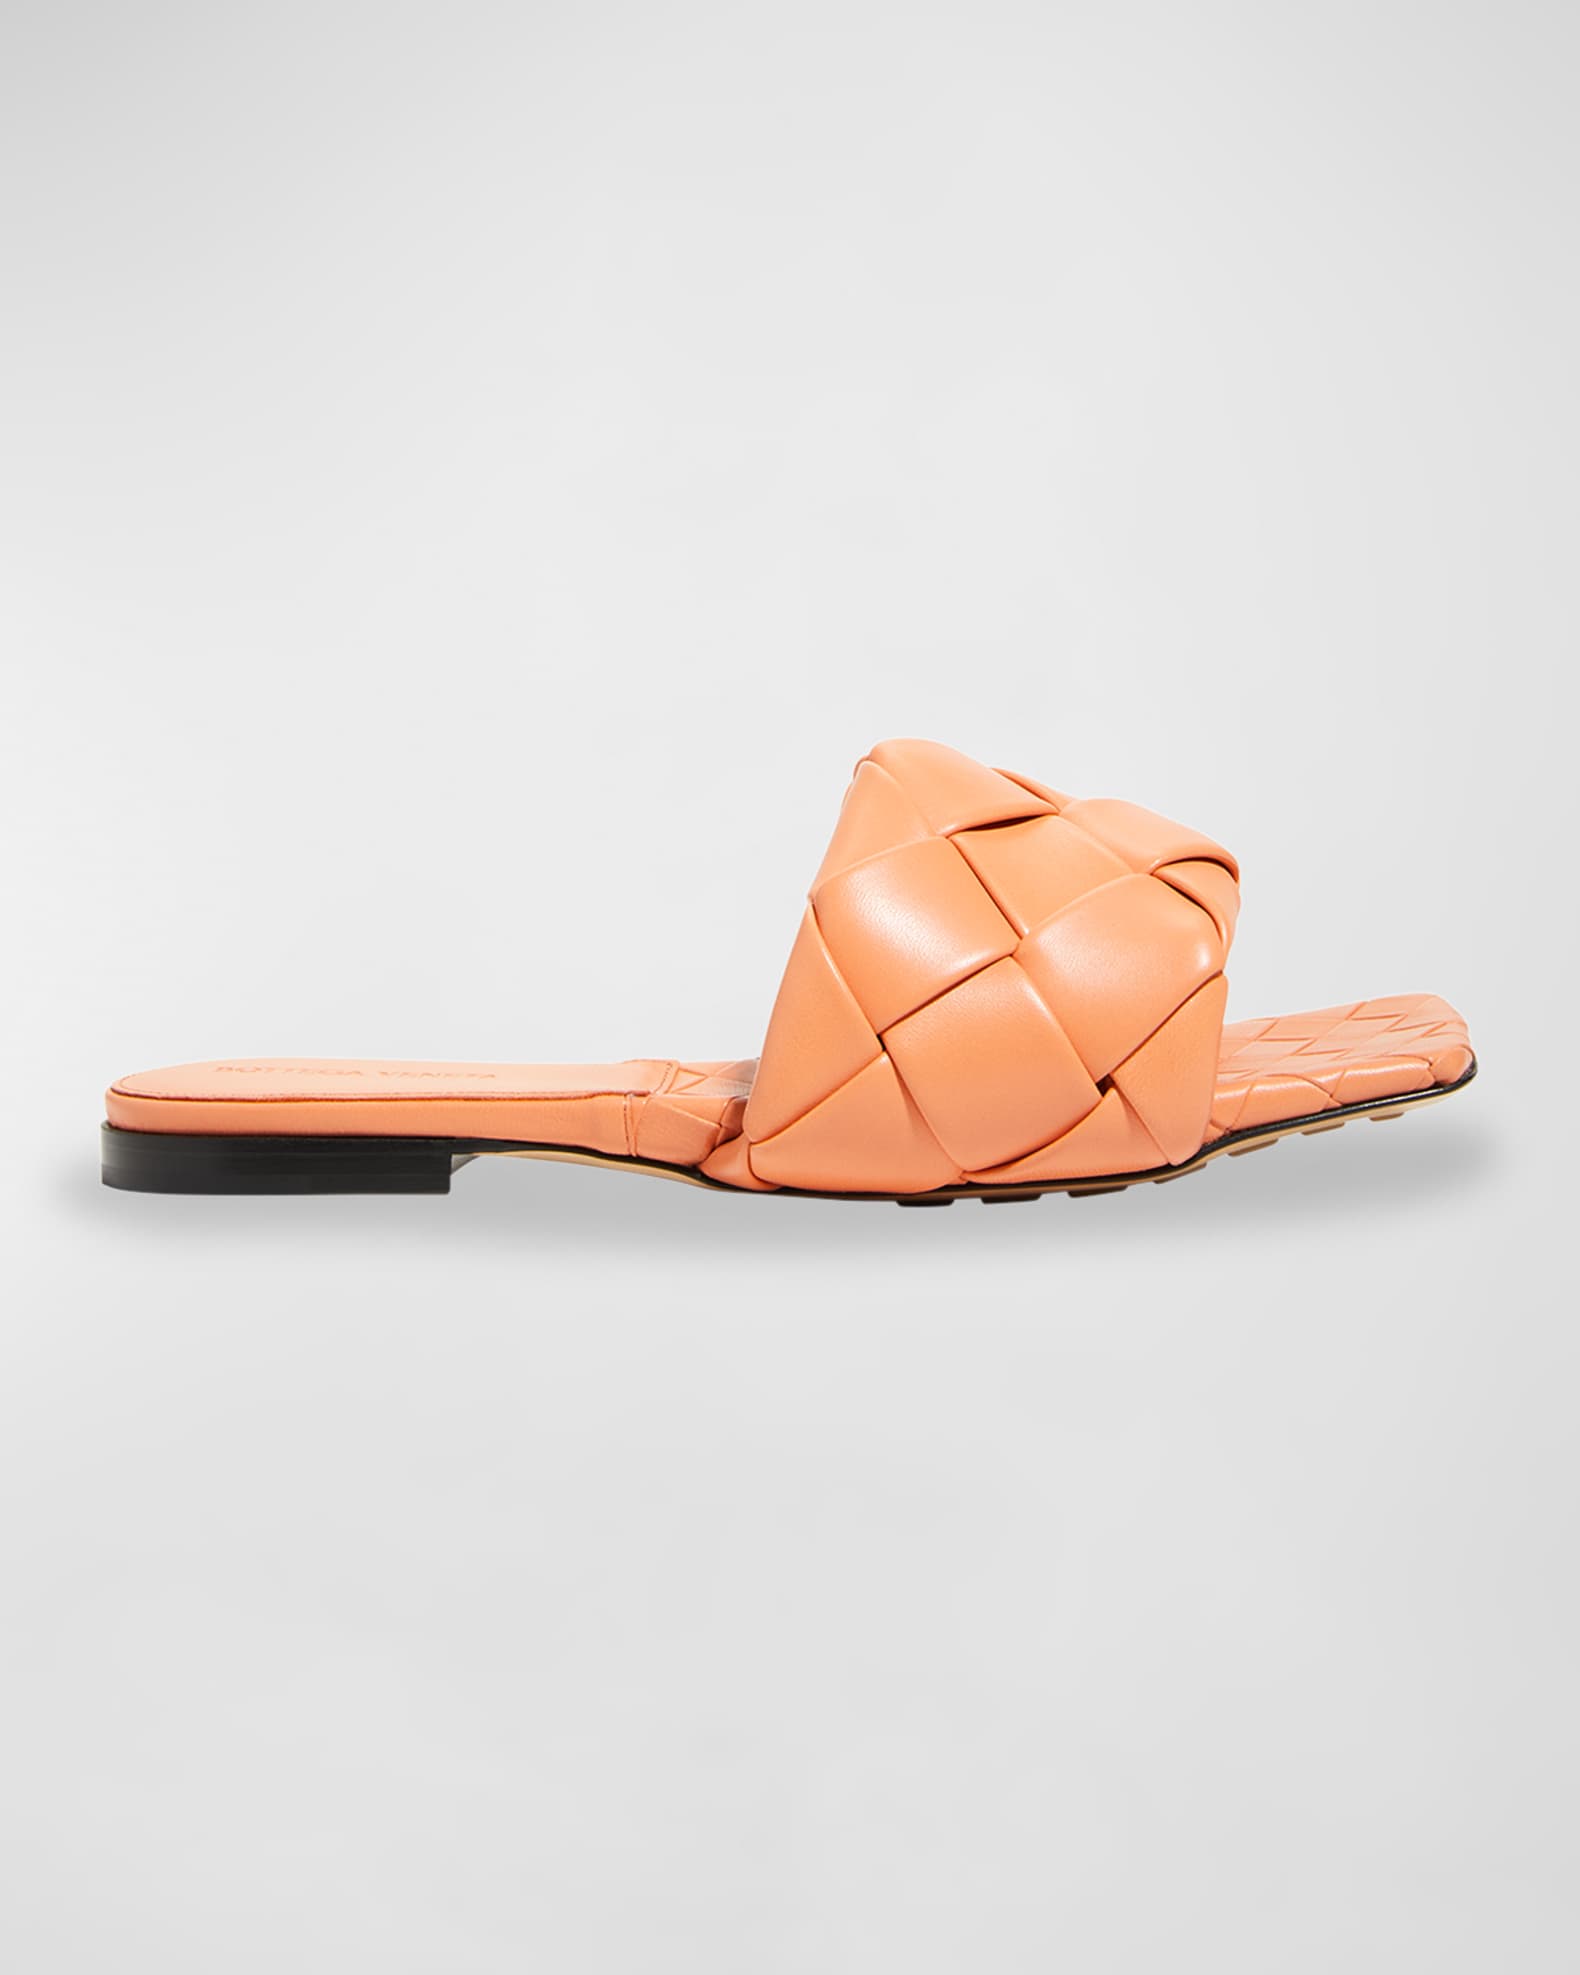 Bottega Veneta The Lido Flat Sandals | Neiman Marcus